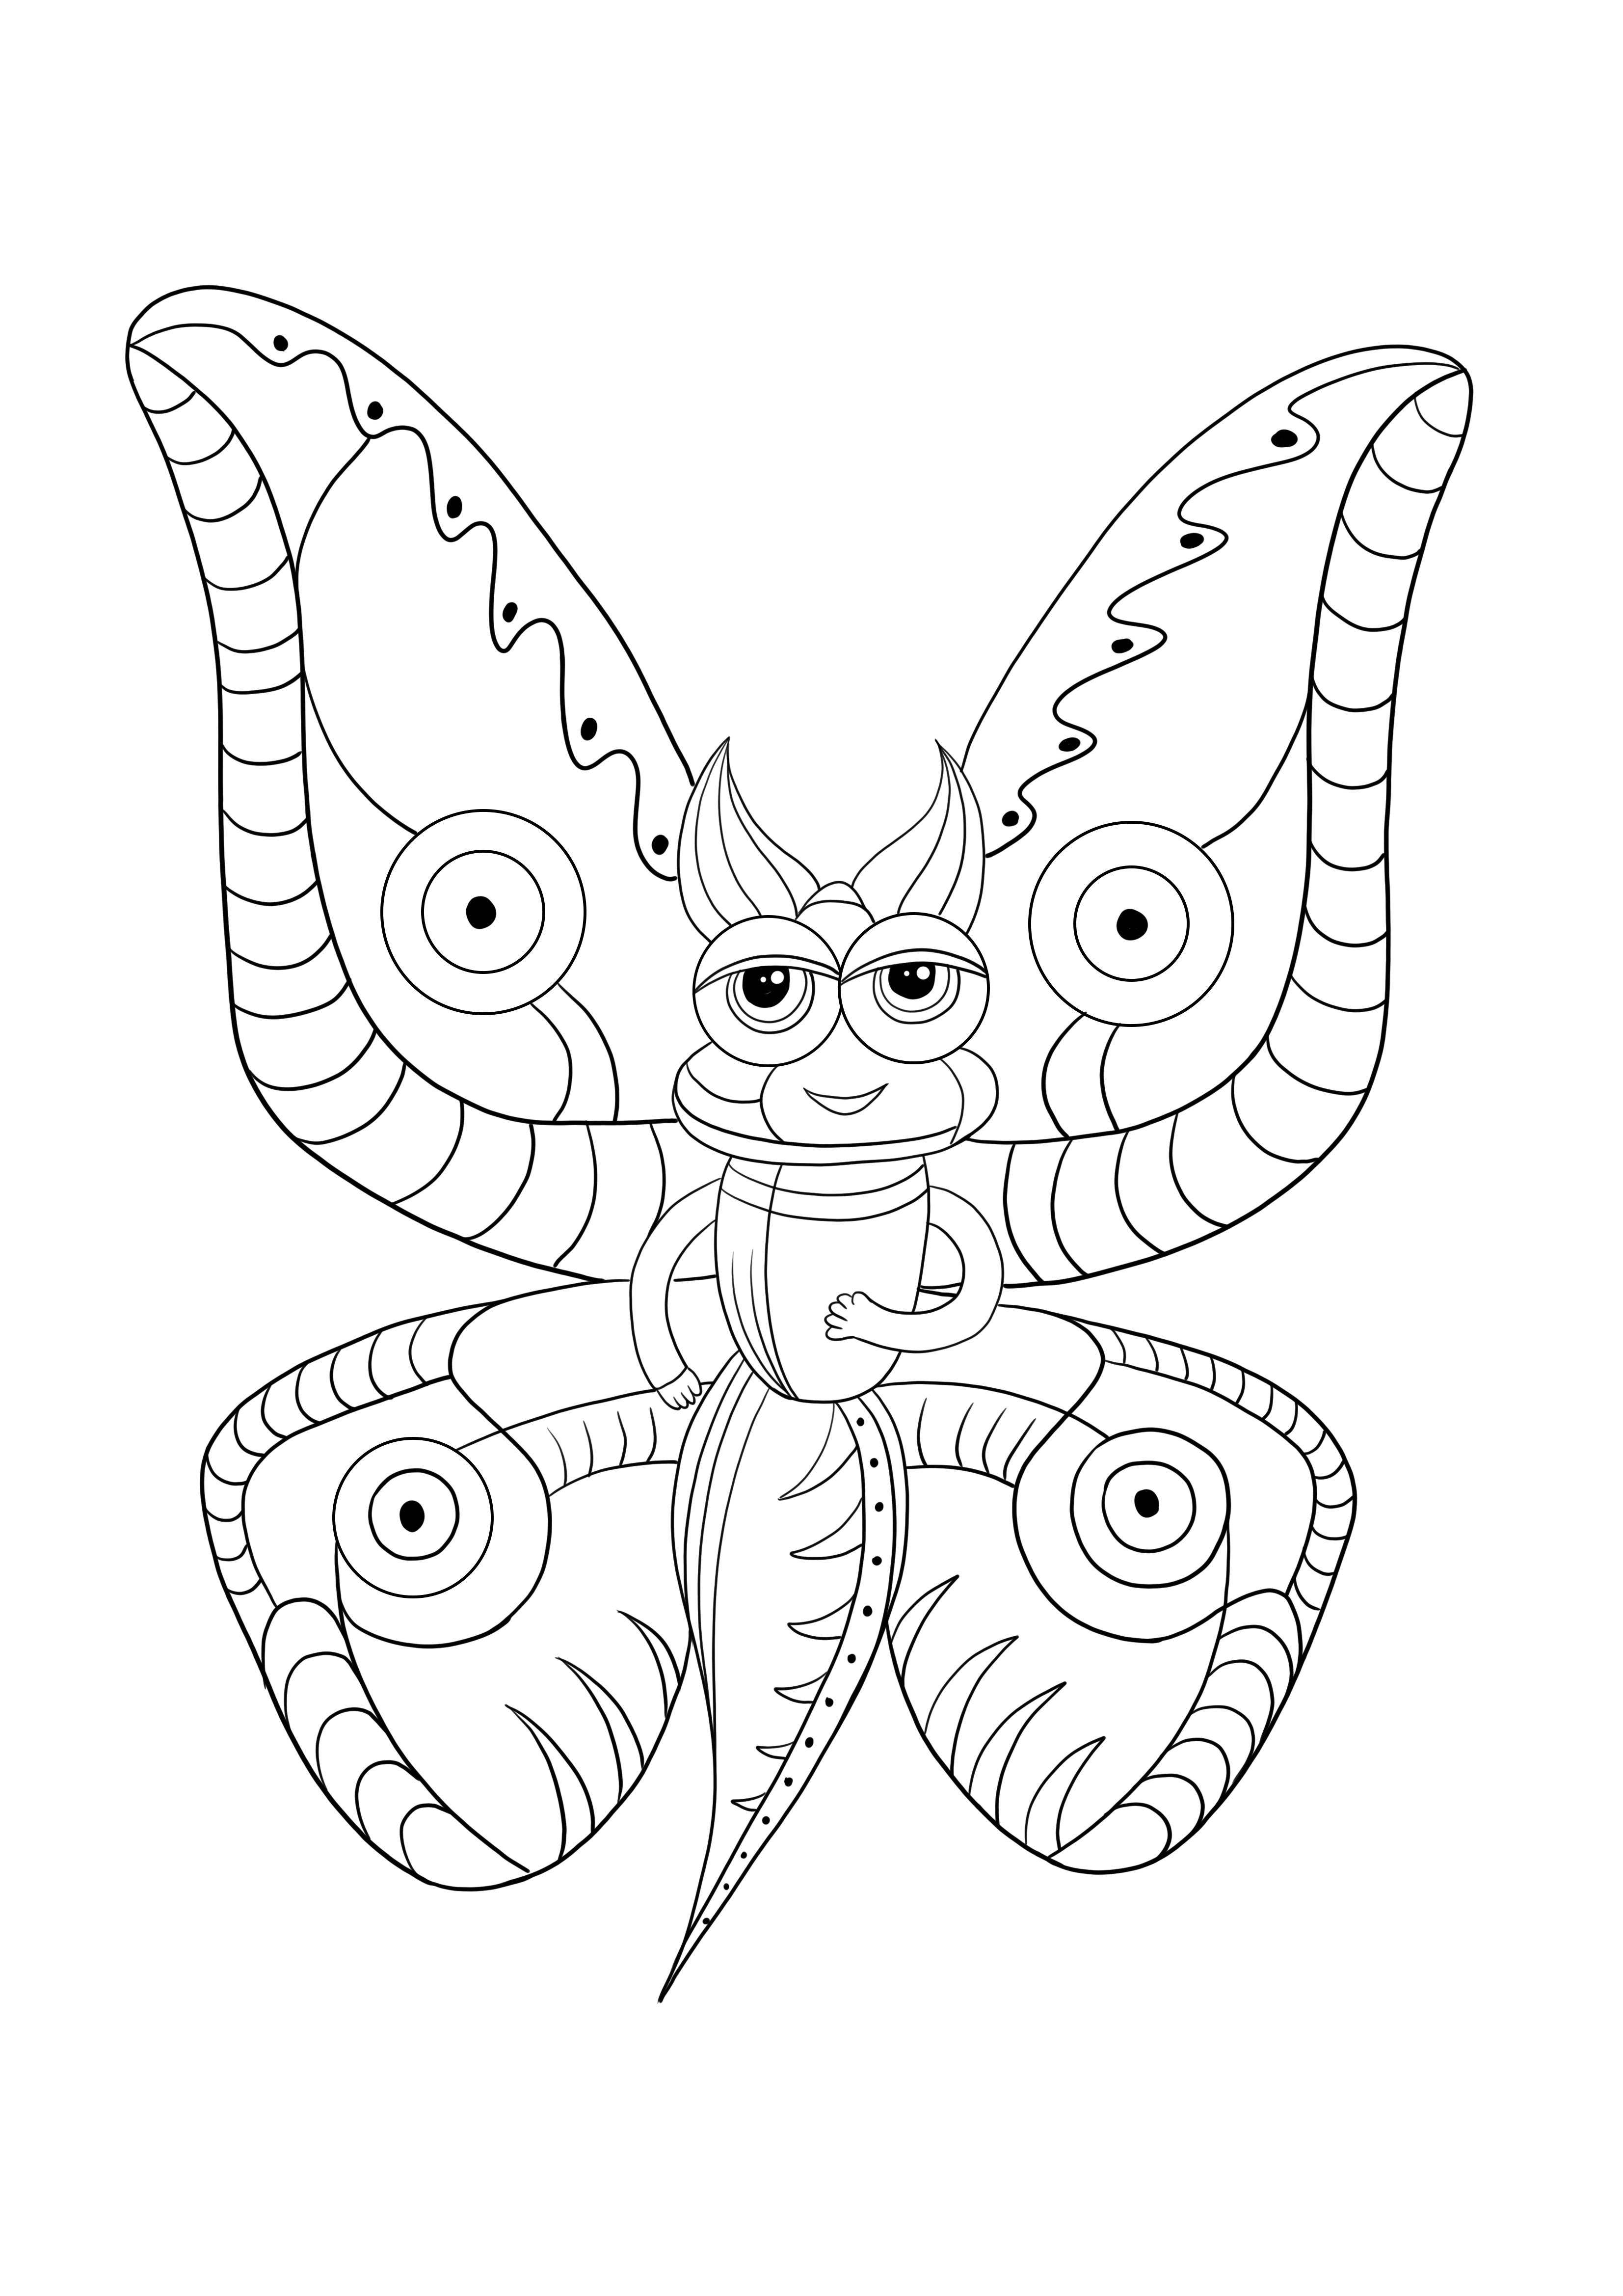 Desenho de borboleta engraçado para imprimir e colorir de graça